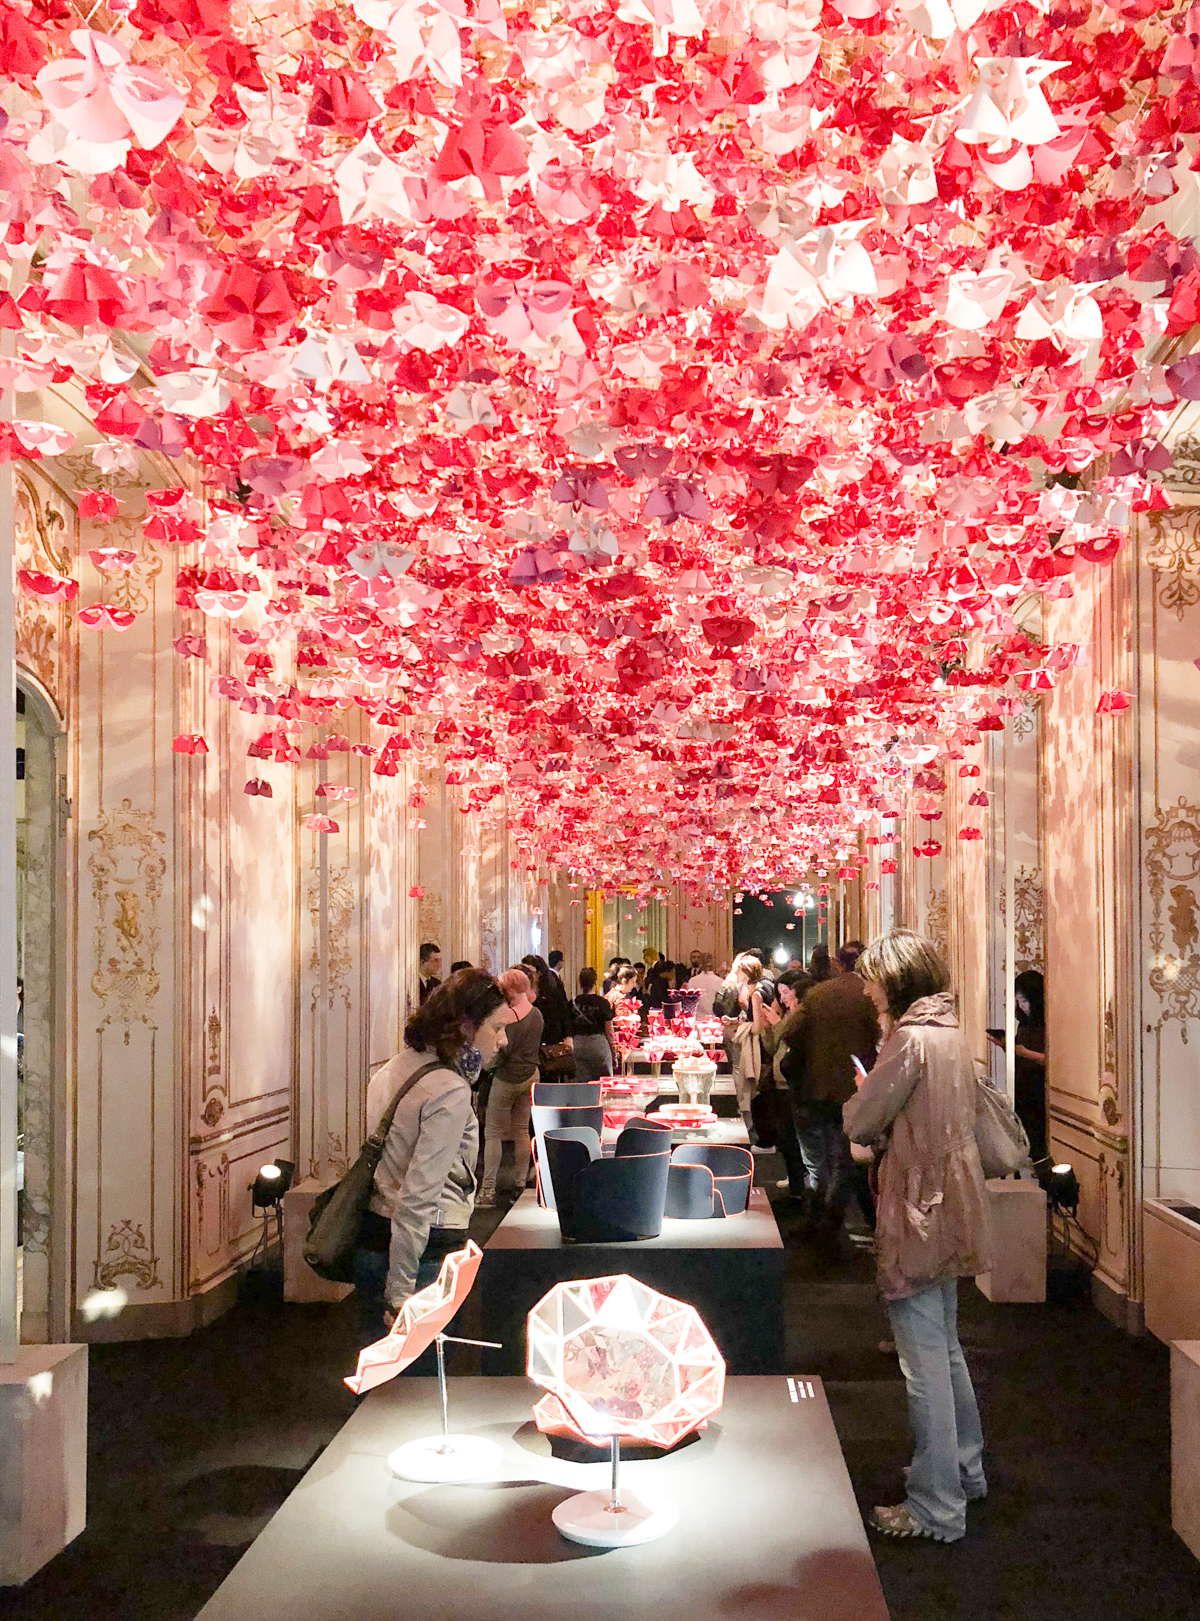 L'arredo giardino di Louis Vuitton al Salone del Mobile 2017